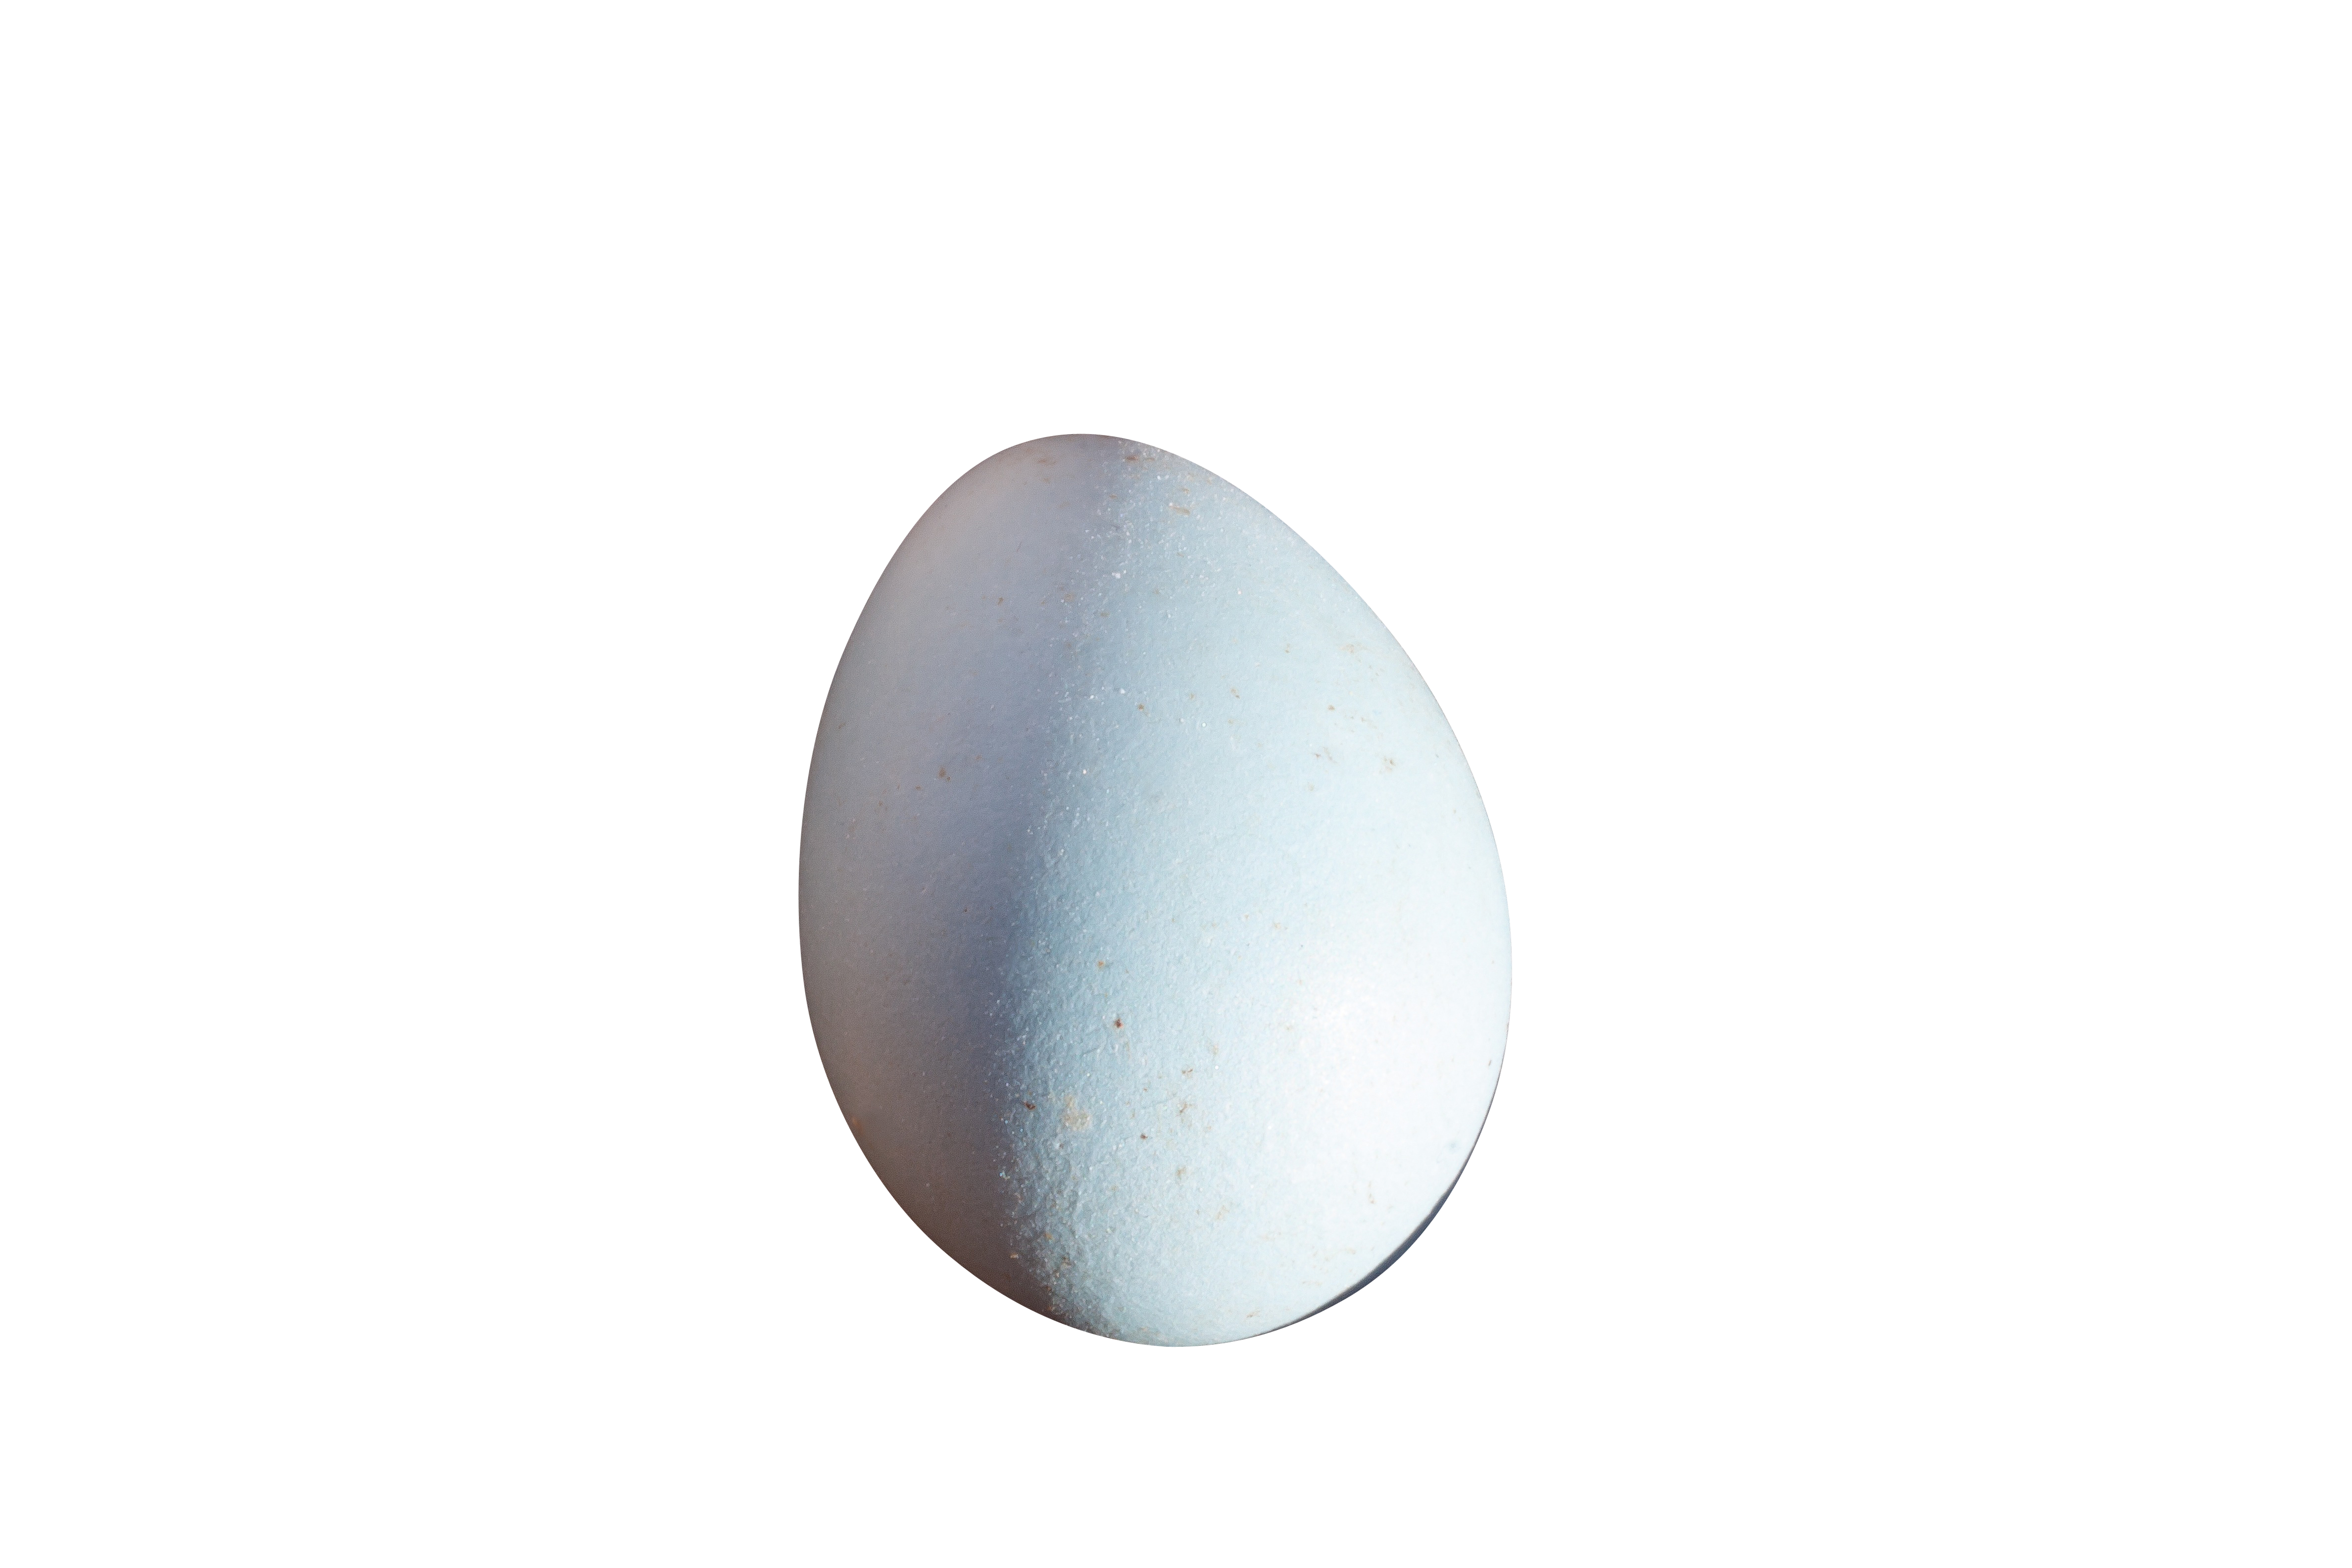 Single Egg Black Background.jpg